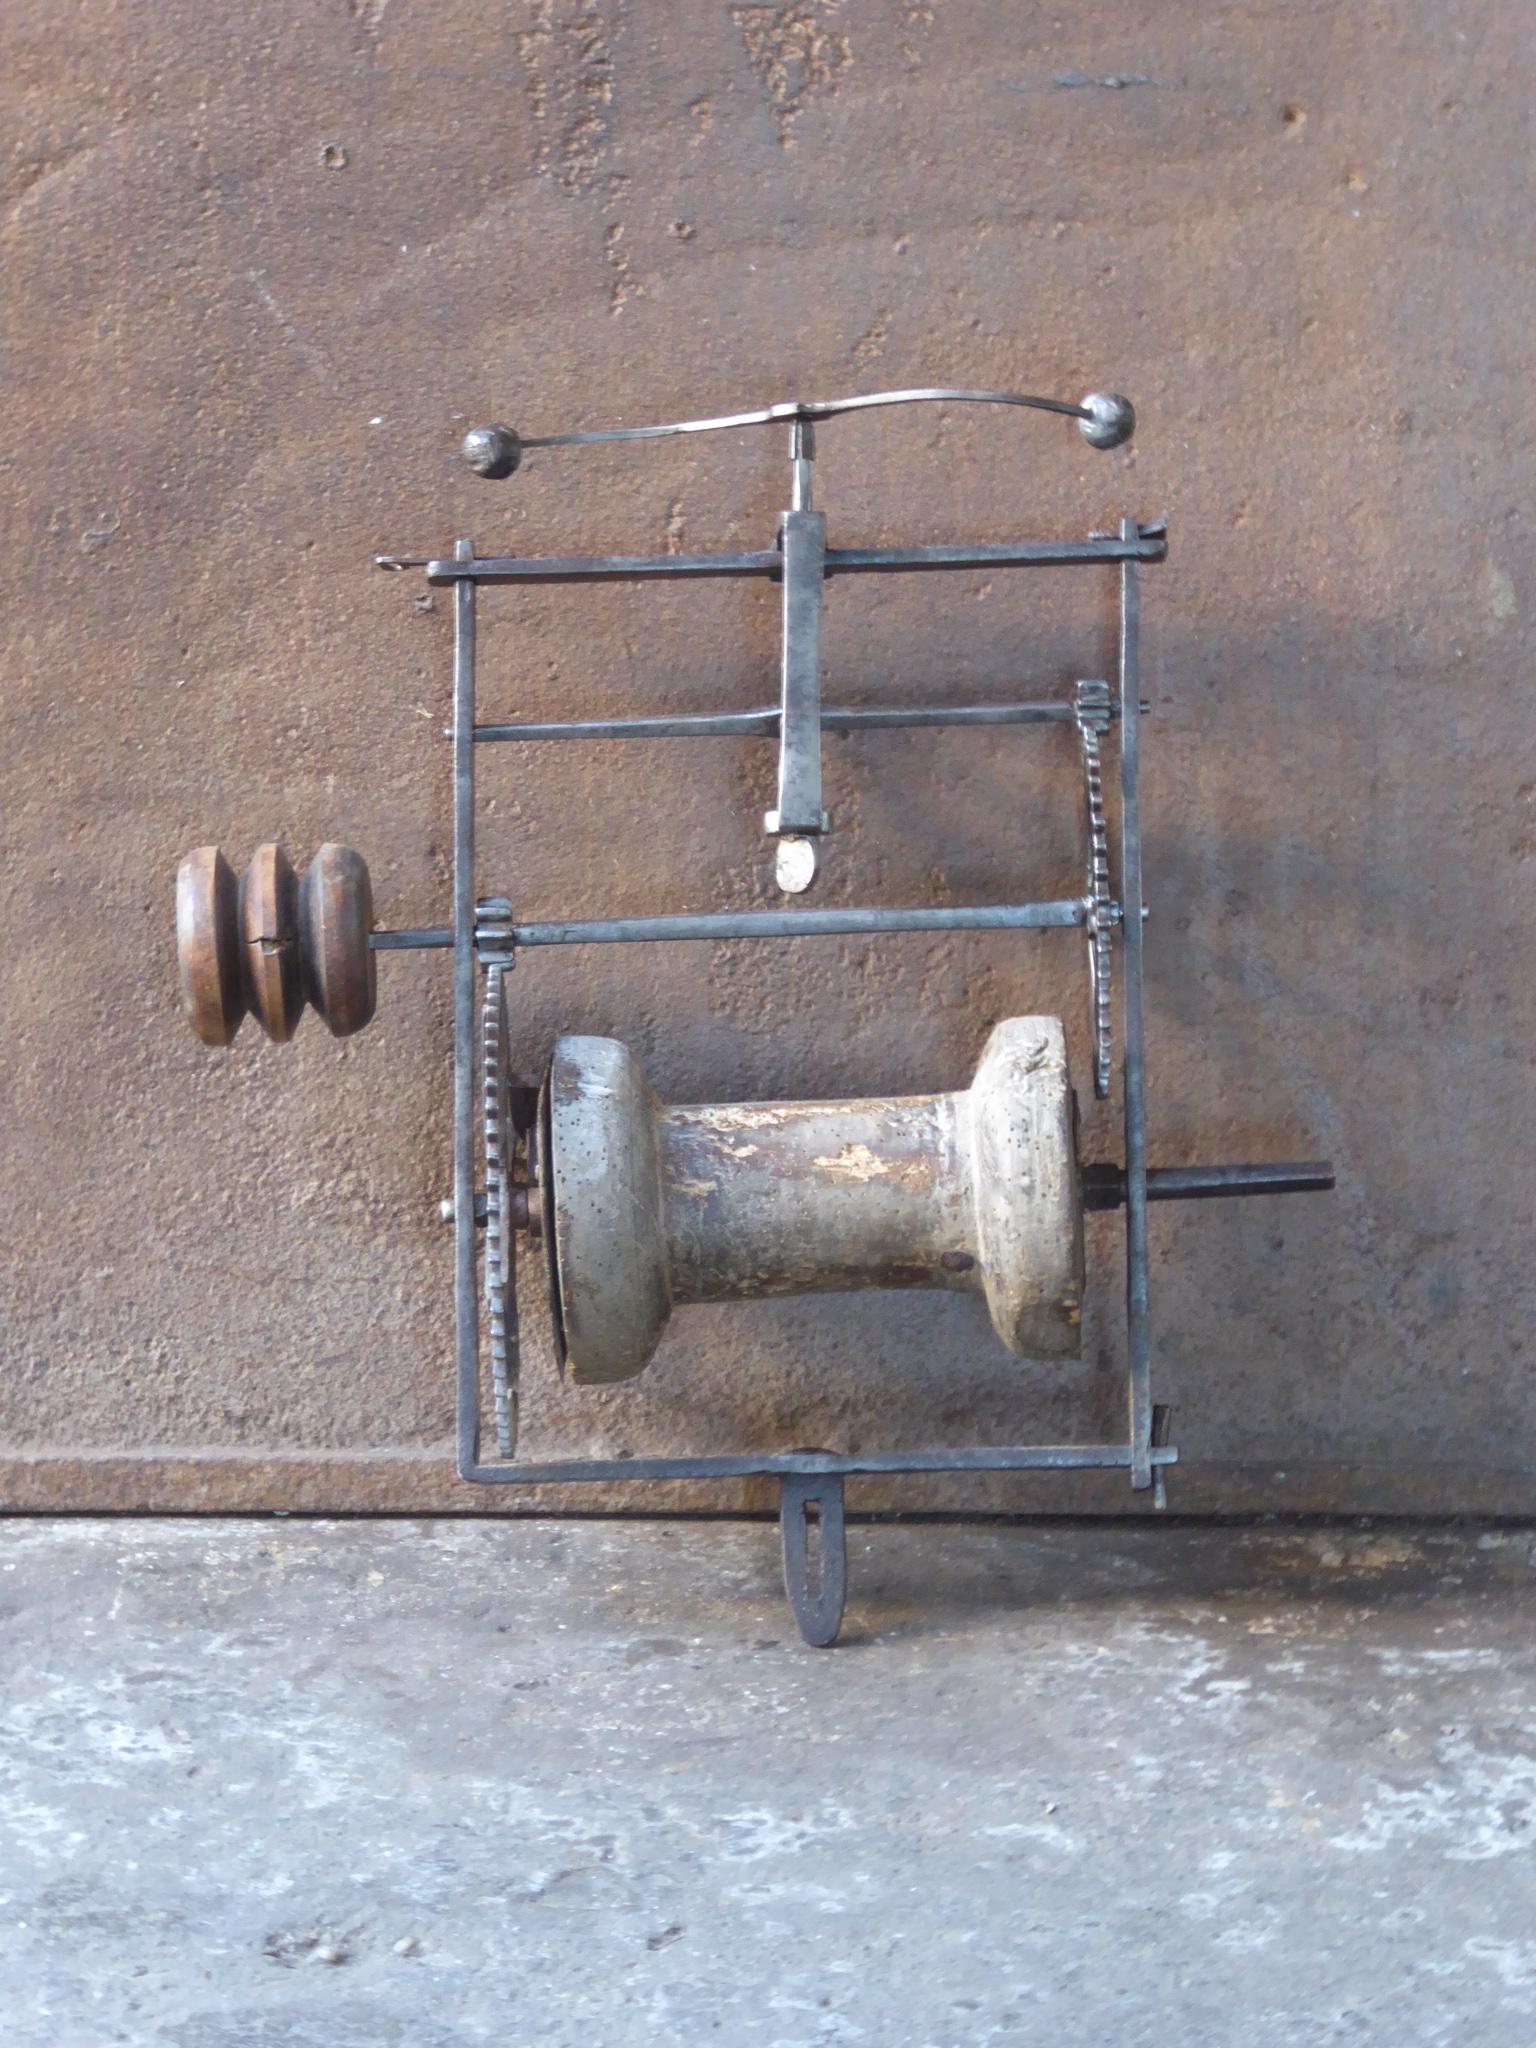 Französischer Spießheber mit Gewichtsantrieb aus dem frühen 17. Jahrhundert aus Schmiedeeisen, Holz und Blei. Es wurde zum Kochen in einem Küchenkamin verwendet. Der geschmiedete Rahmen wird durch Keile zusammengehalten, eine sehr alte Technik. Der